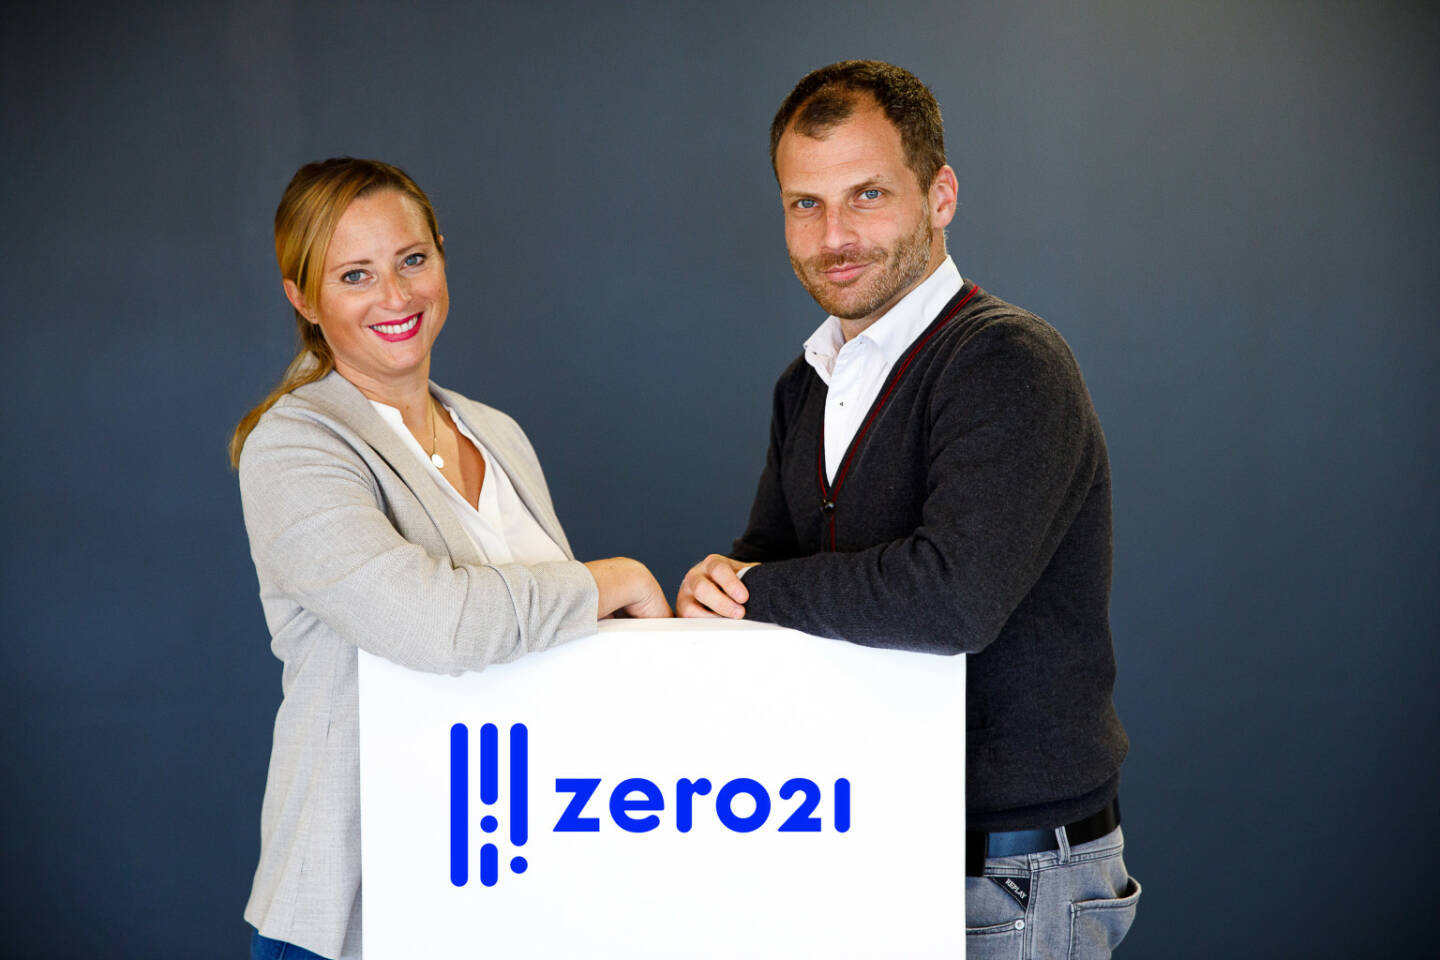 Mit zero21.club startet der erste Club für das Innovations-Ecosystem in Österreich; im Bild: Karin Turki, Head of Memberships bei zero21 und Jerolim Filippi, Leiter von zero21; Credit: Shooting Music